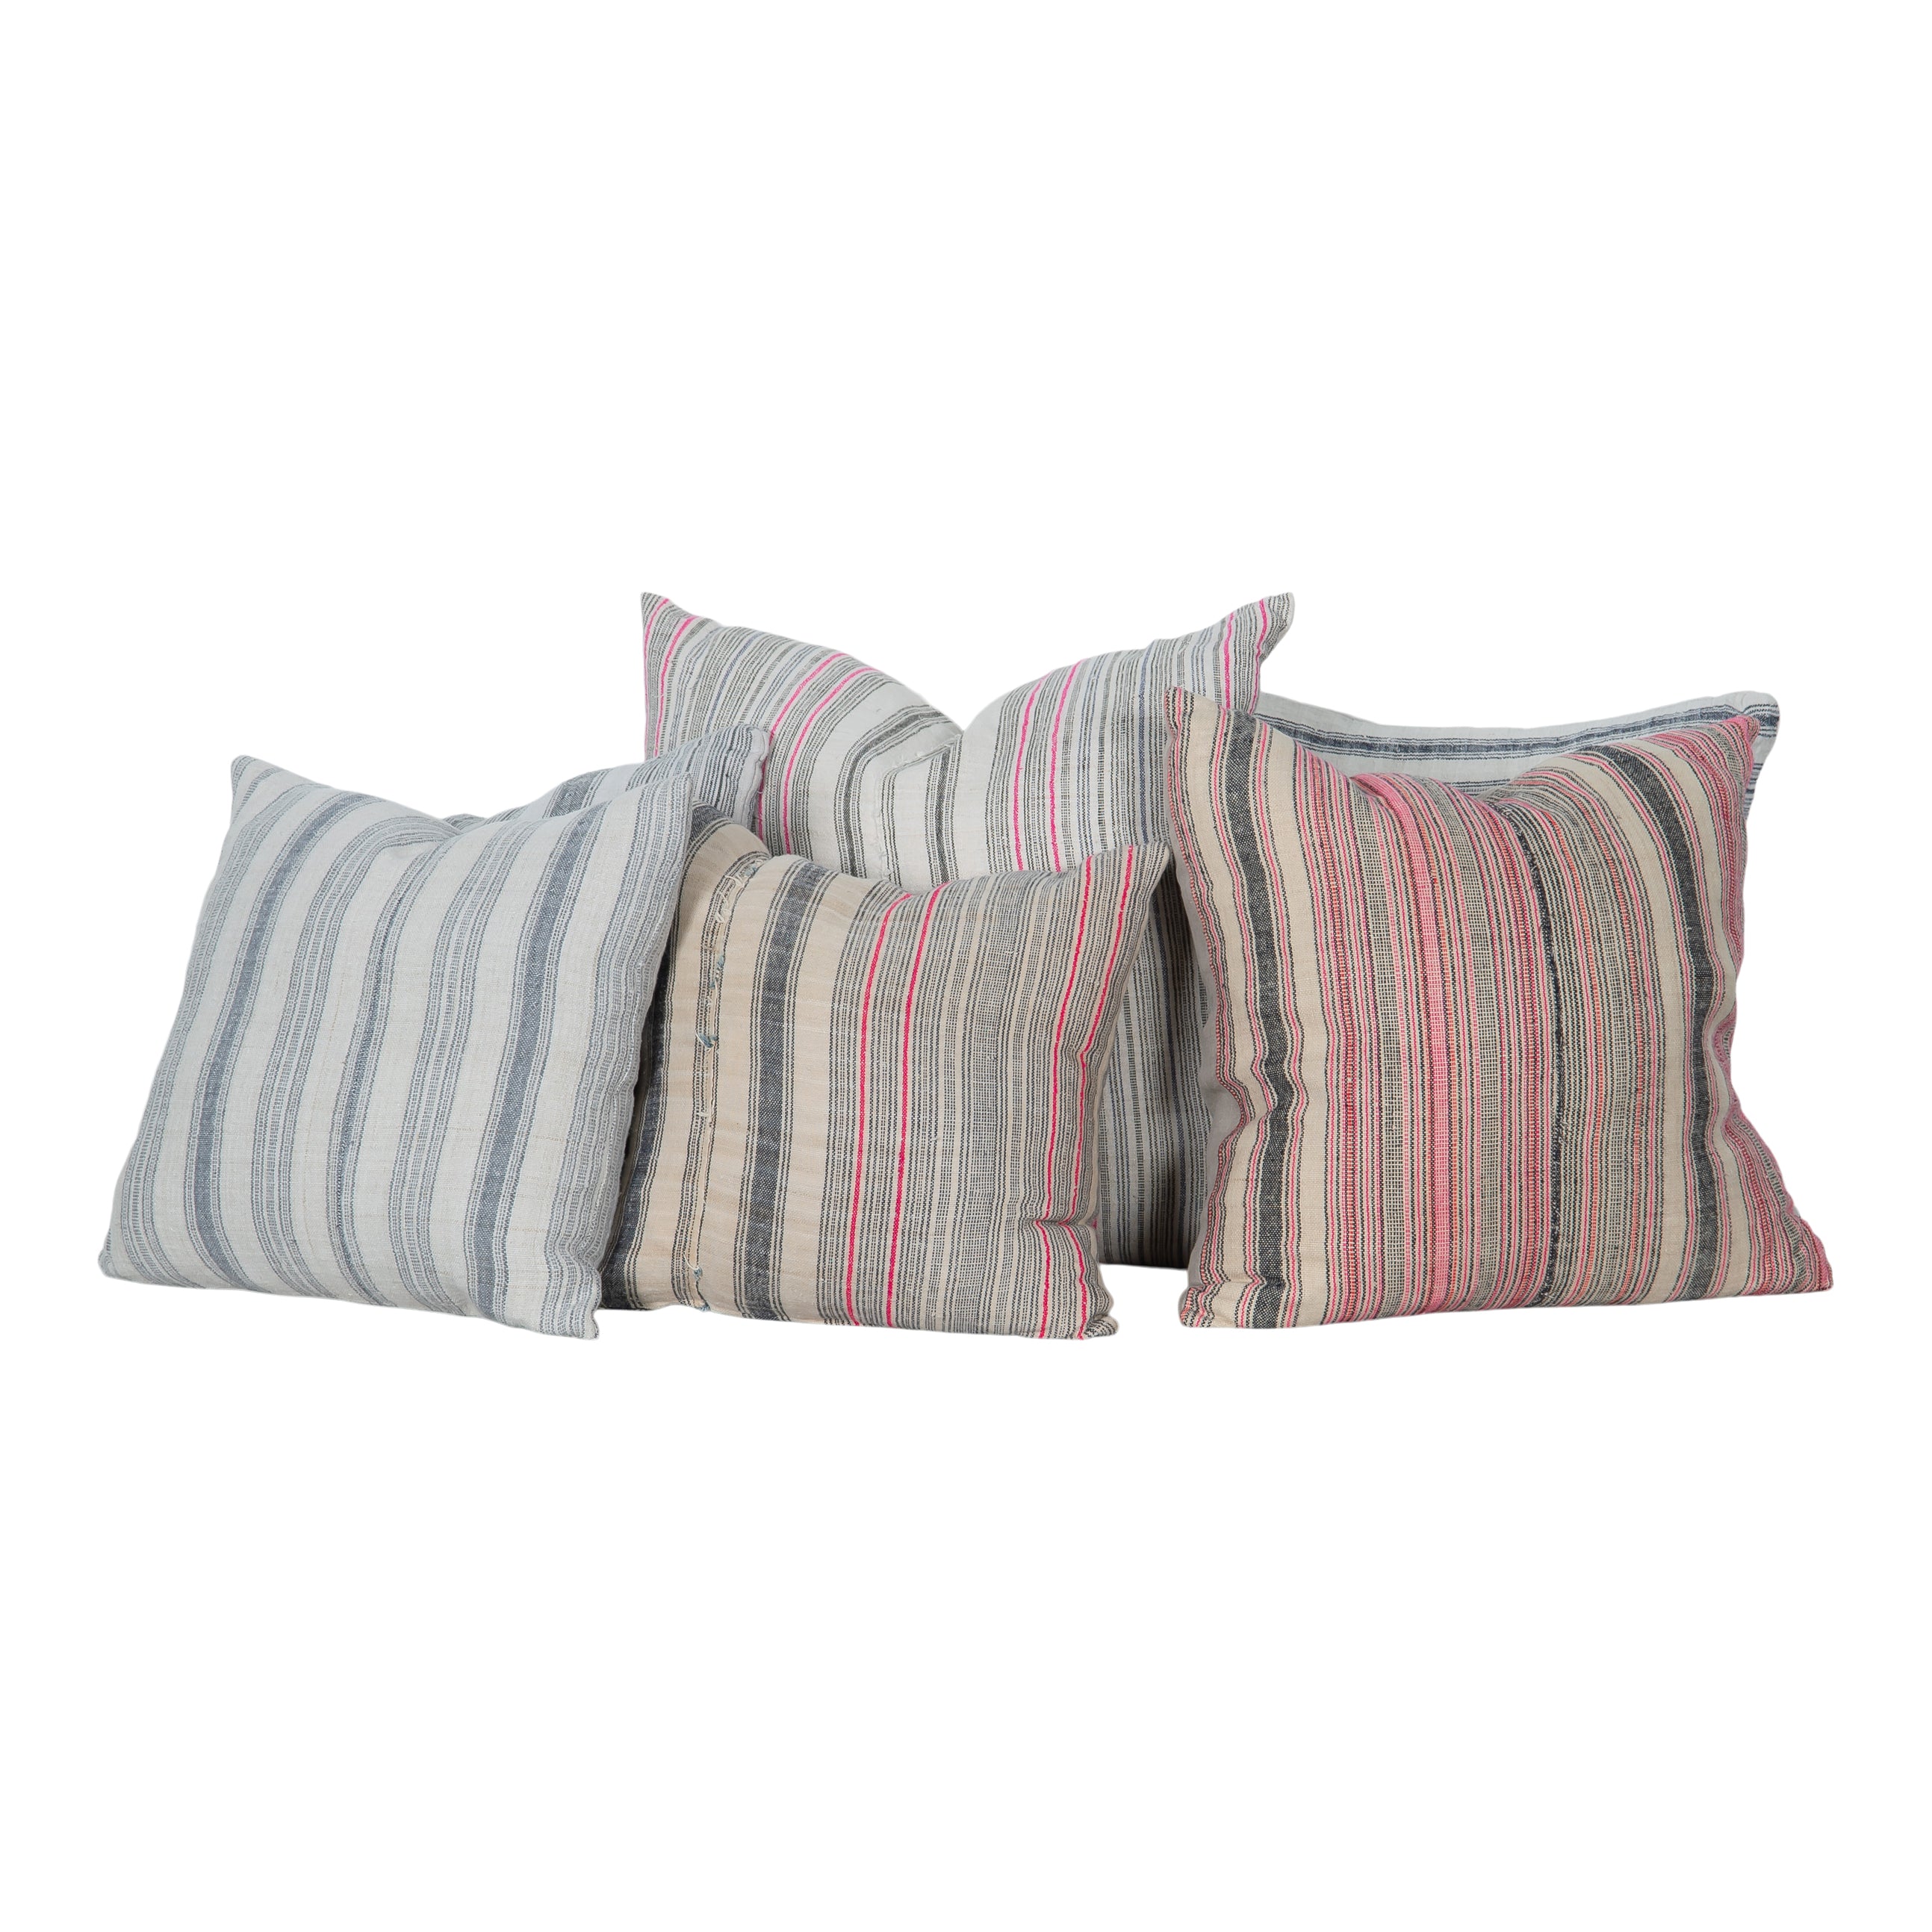 Addis Pillows (Set of 3)